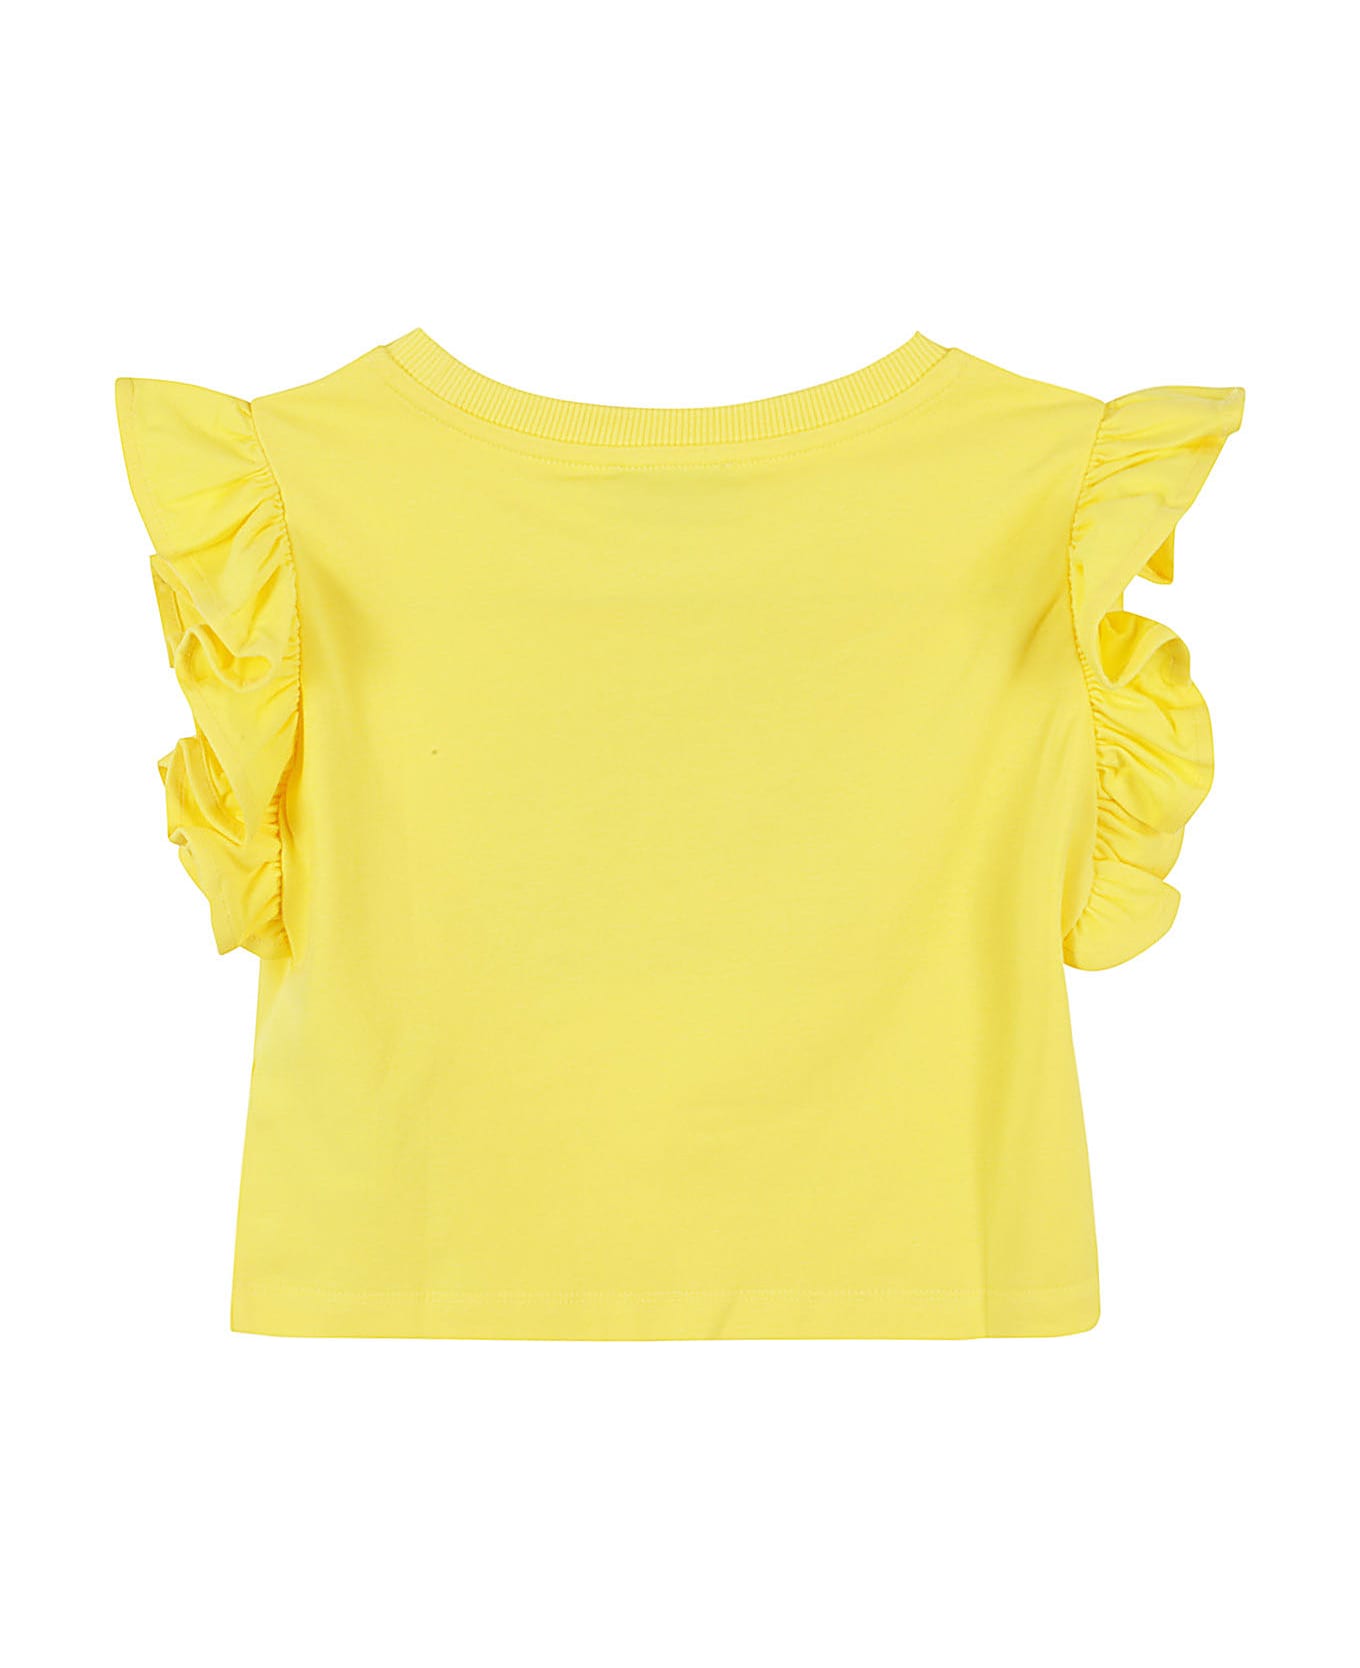 Moschino Tshirt - Cyber Yellow